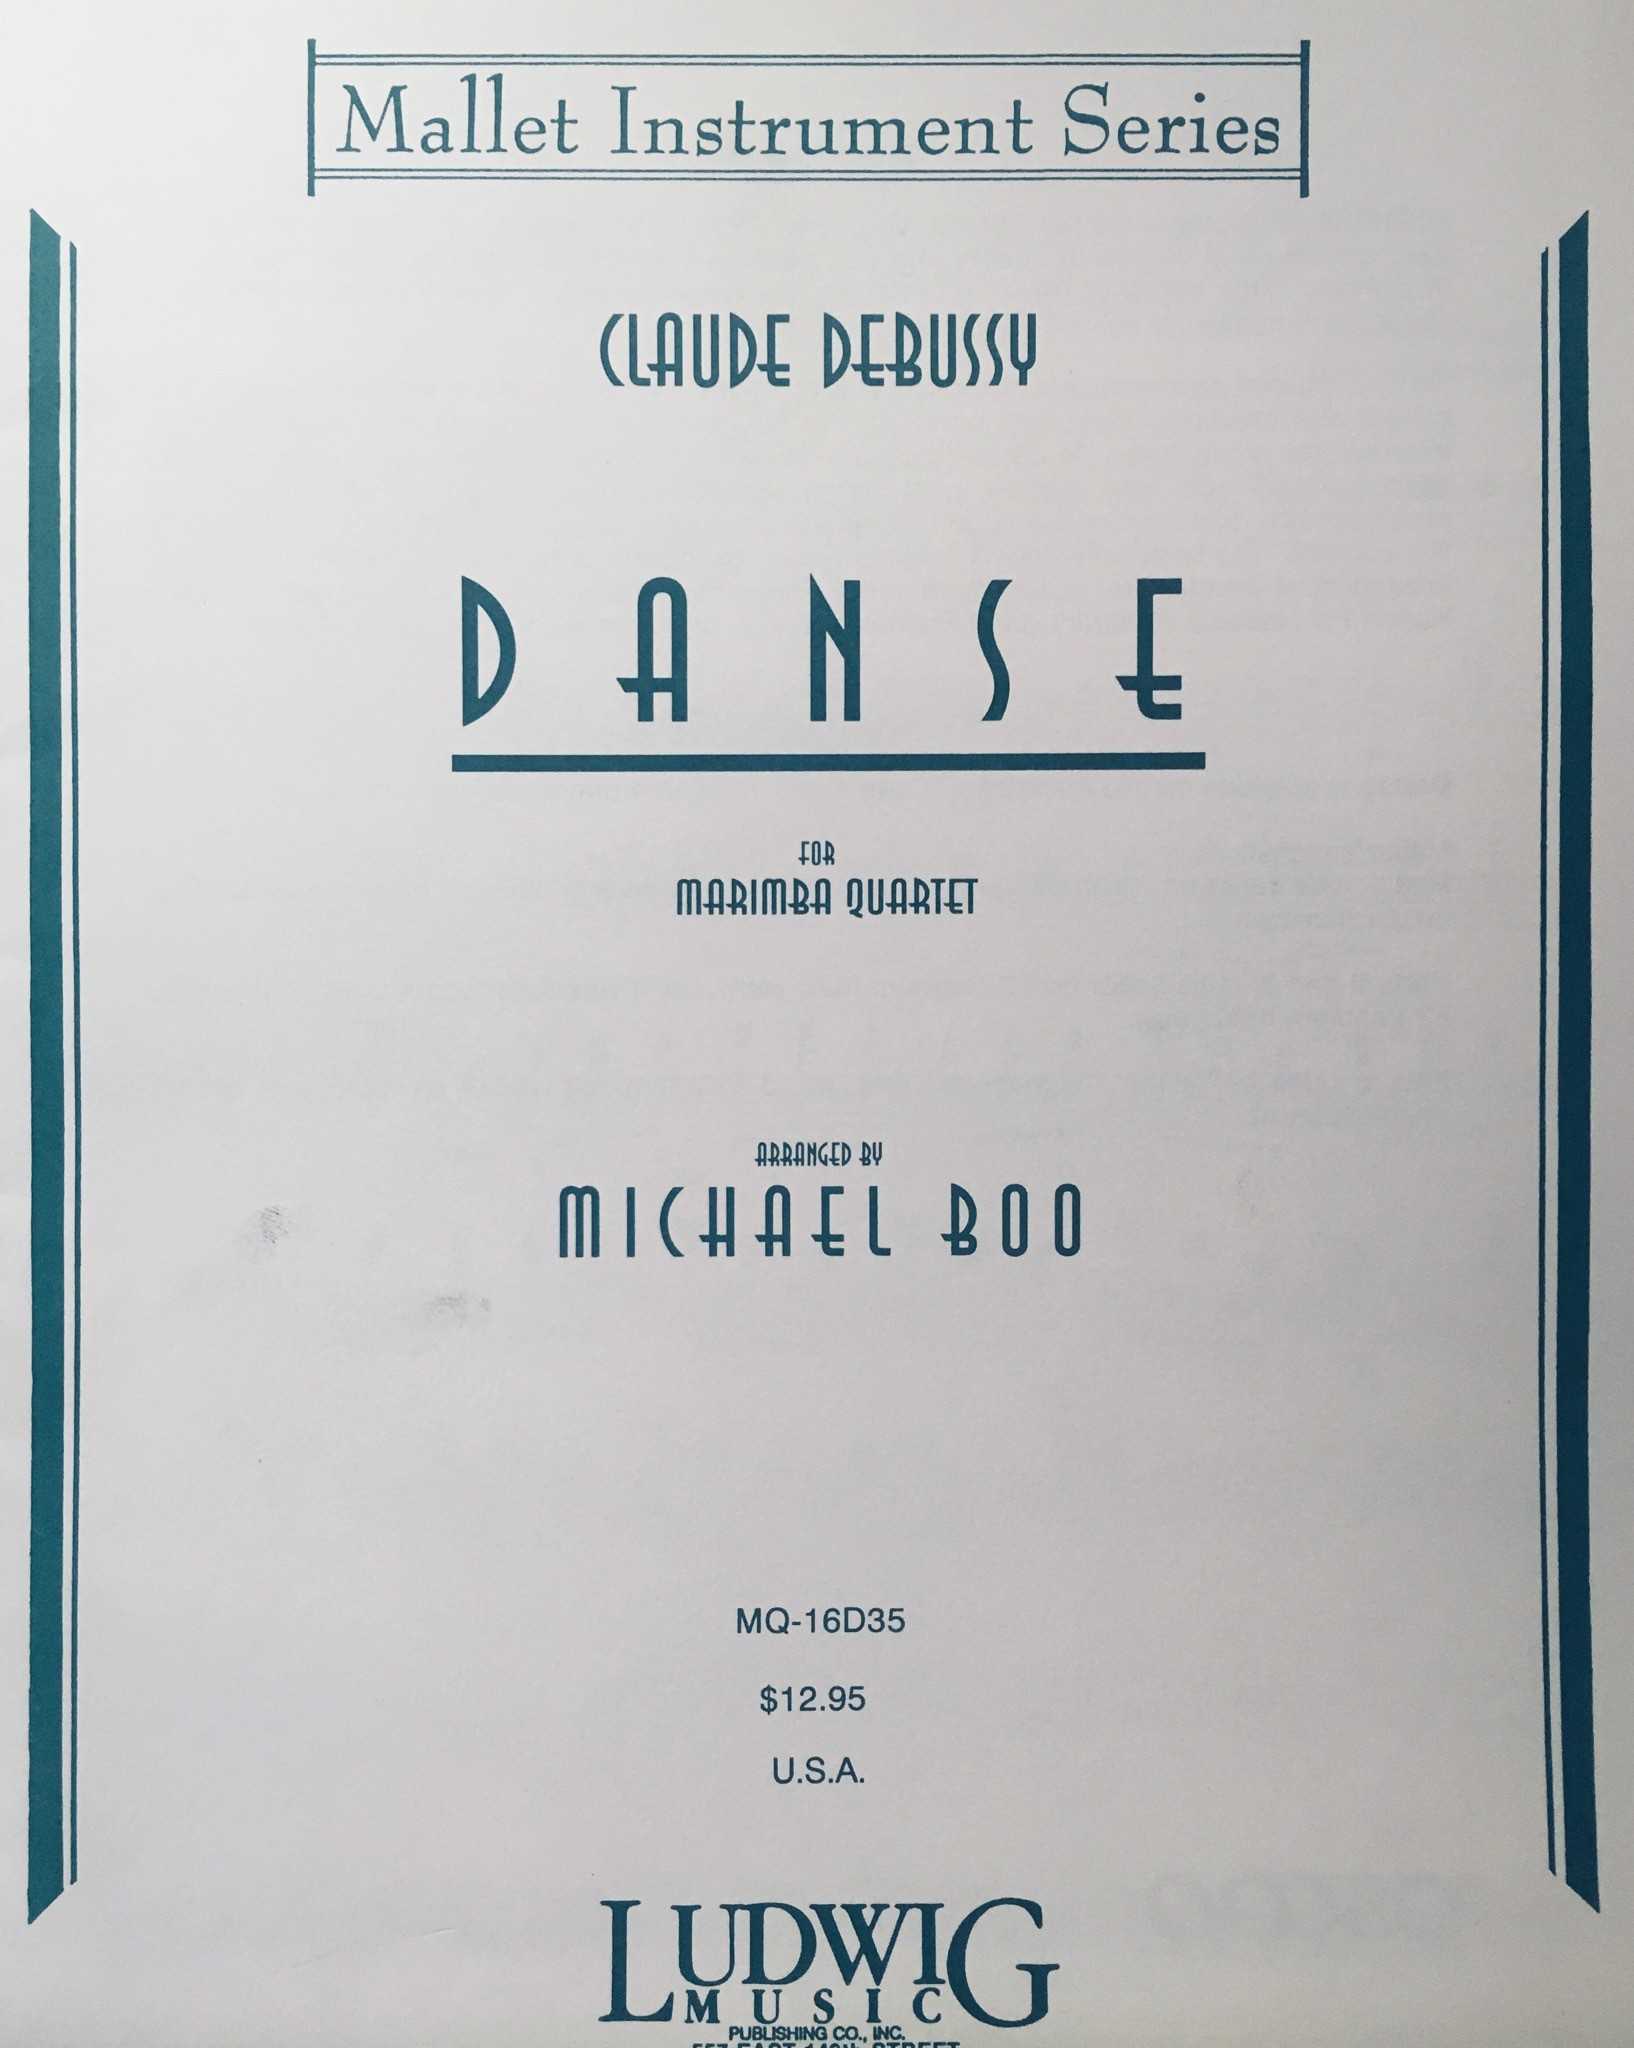 Danse by Debussy arr. Michael Boo